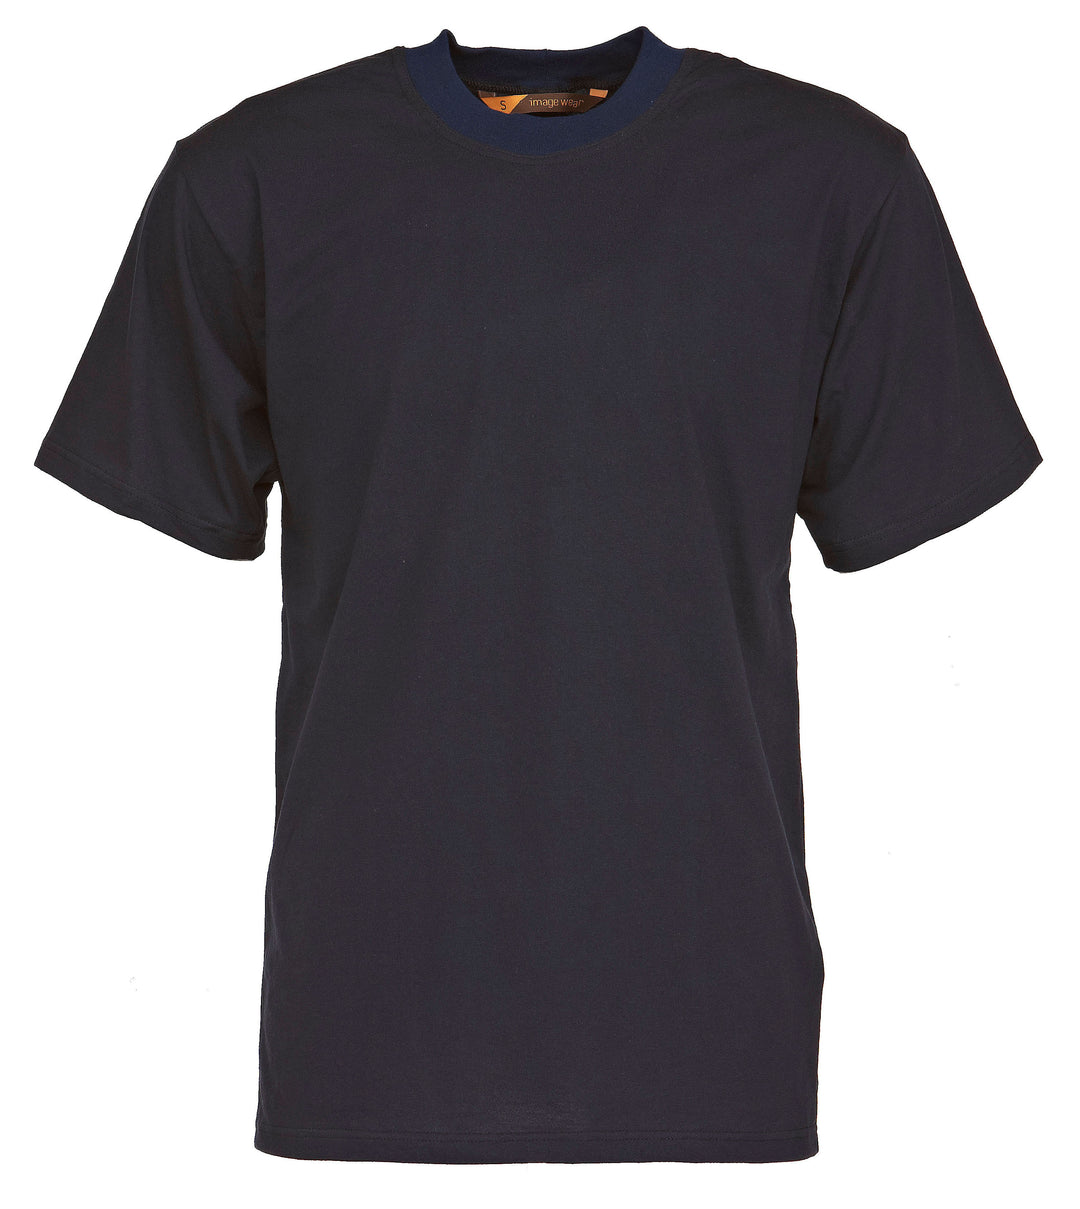 Tummansininen lyhythihainen t-paita miehille ja naisille pyöreällä pääntiellä.